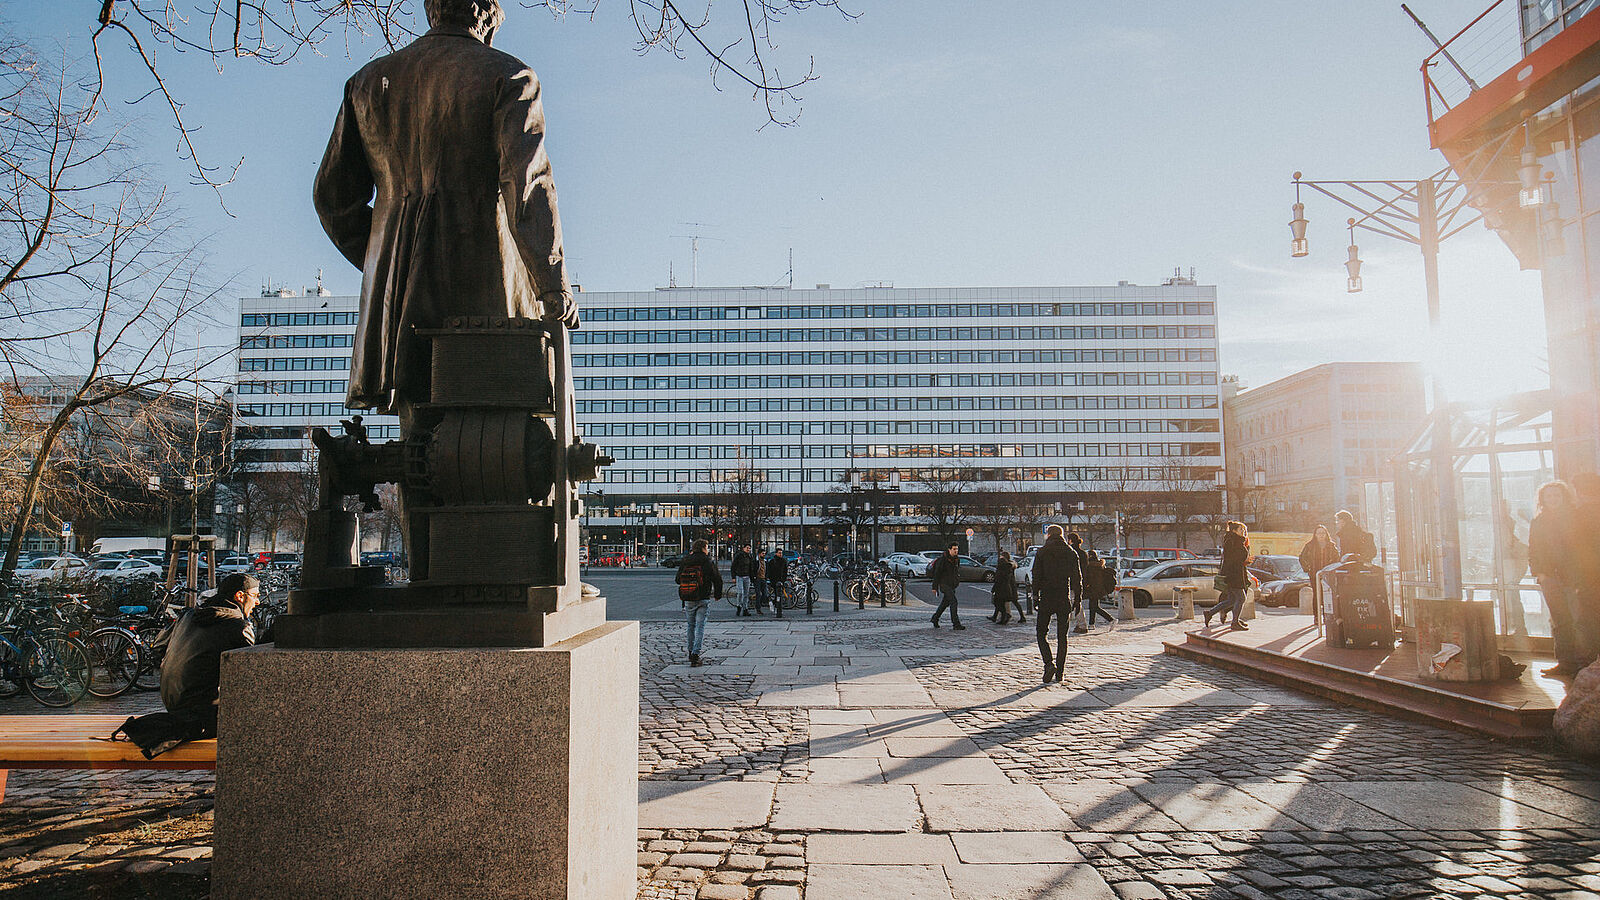 Rückseite der Statue von Werner von Siemens am Mathematikgebäude mit Blick über die Straße des 17. Juni auf das Hauptgebäude im Sonnenschein